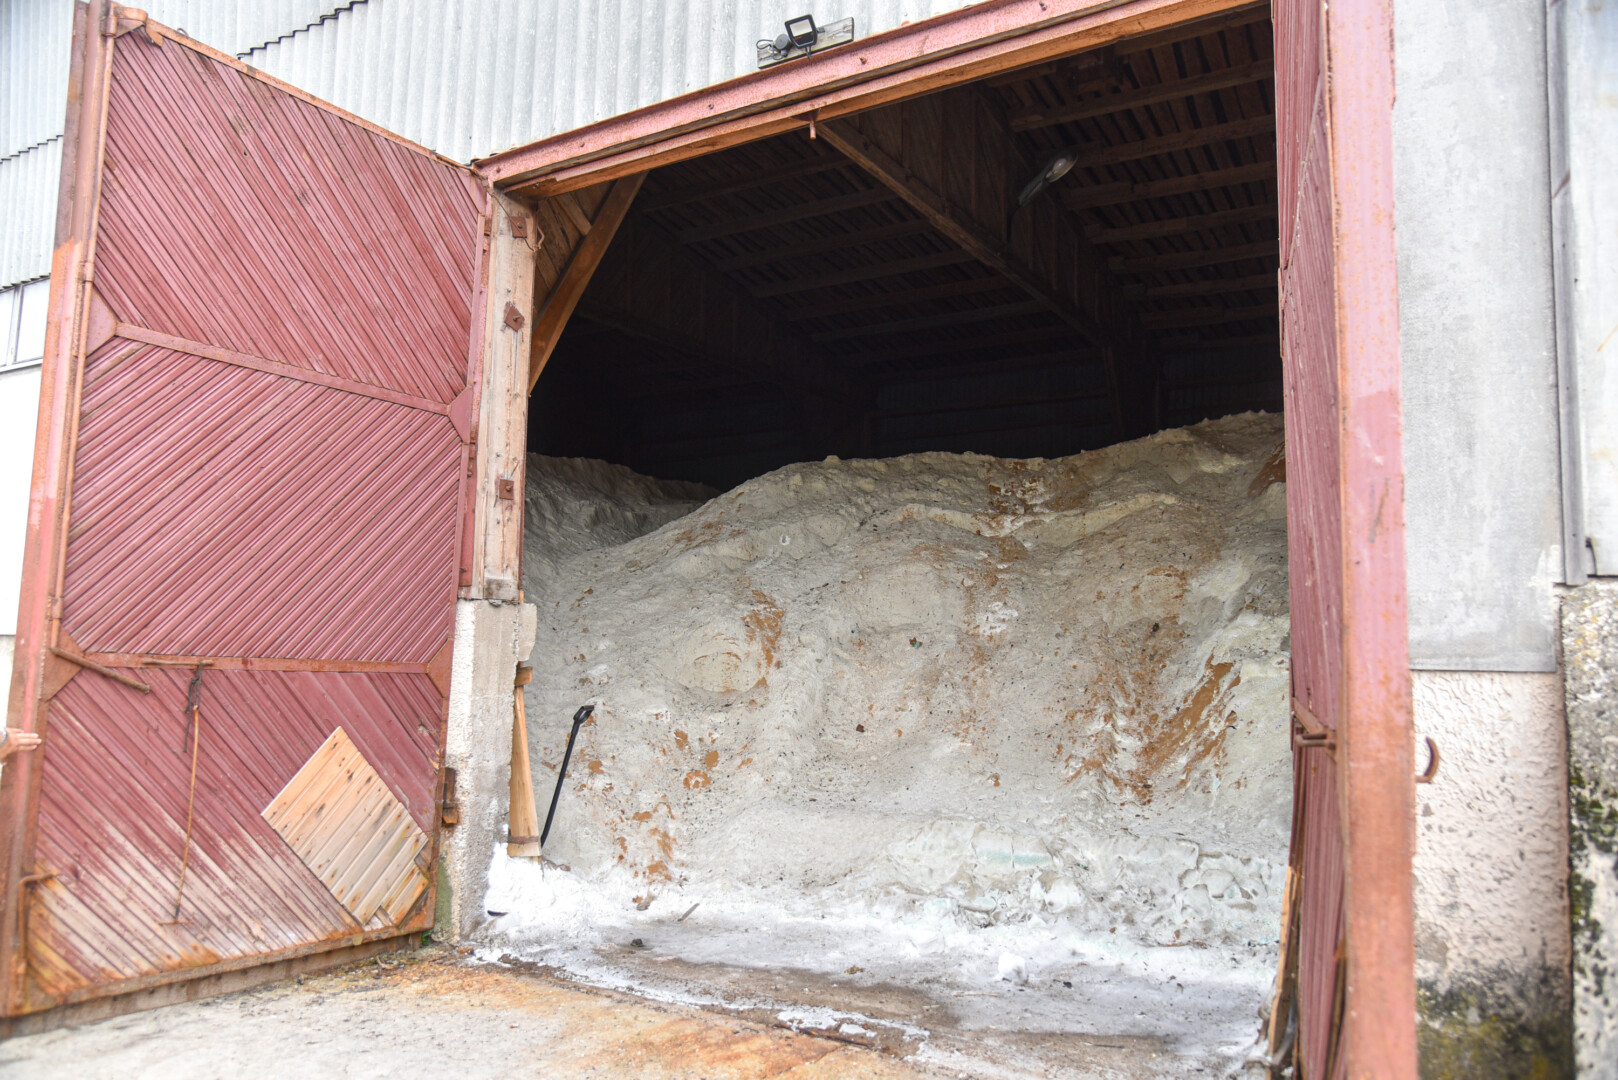 Įmonės „Panevėžio specialus autotransportas“ sandėliuose senka dar sausį pirktos druskos atsargos – vasarą ji naudojama laistyti žvyrkeliams. P. ŽIDONIO nuotr. 